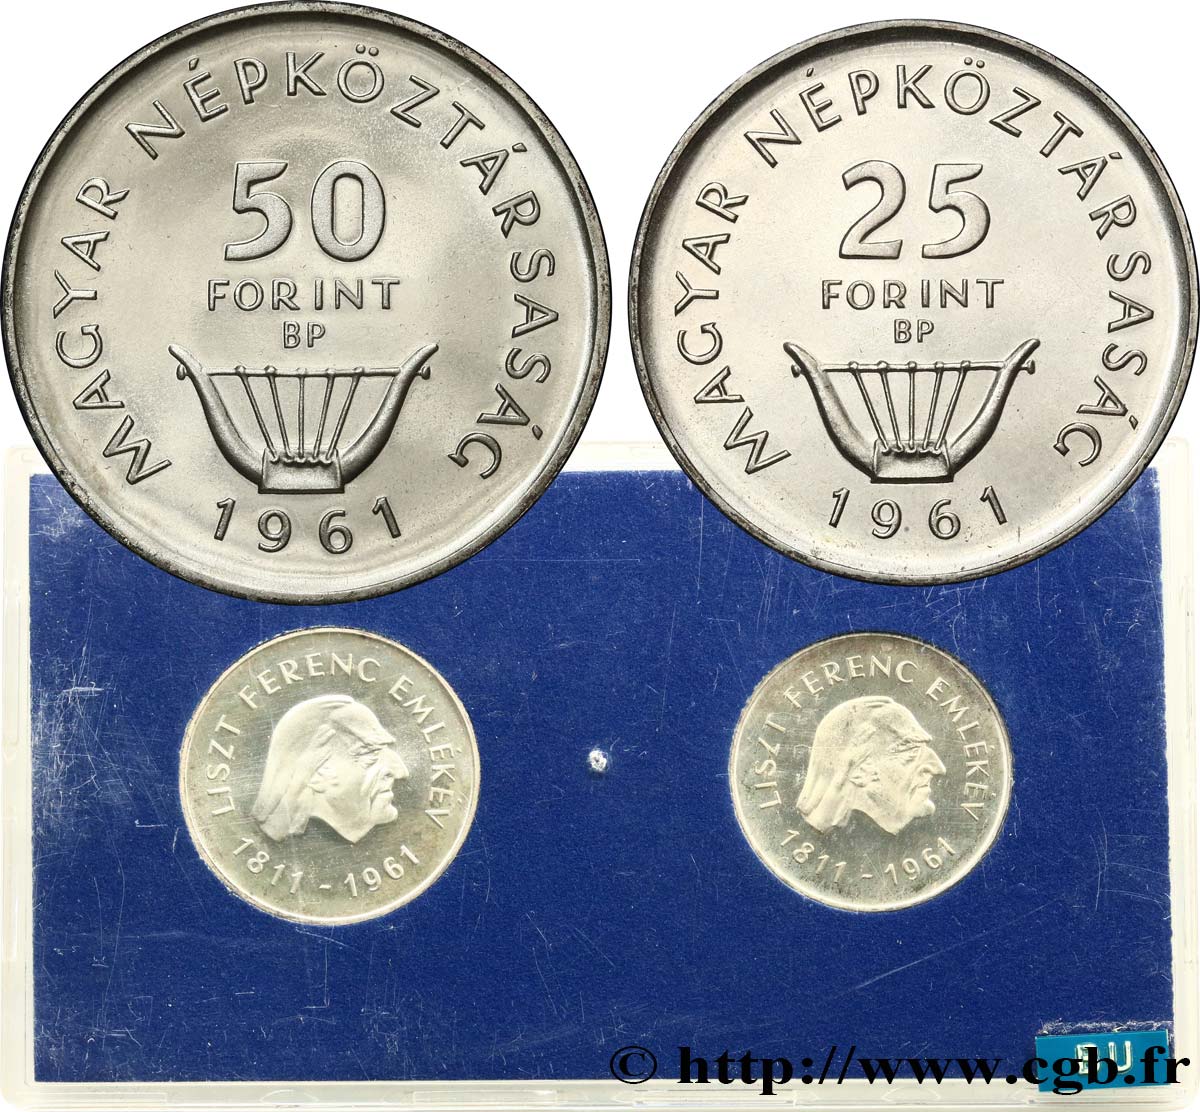 HUNGARY Série Proof - 2 monnaies - Forint 150e anniversaire naissance de Ferenc (Franz) Liszt 1961 Budapest AU 